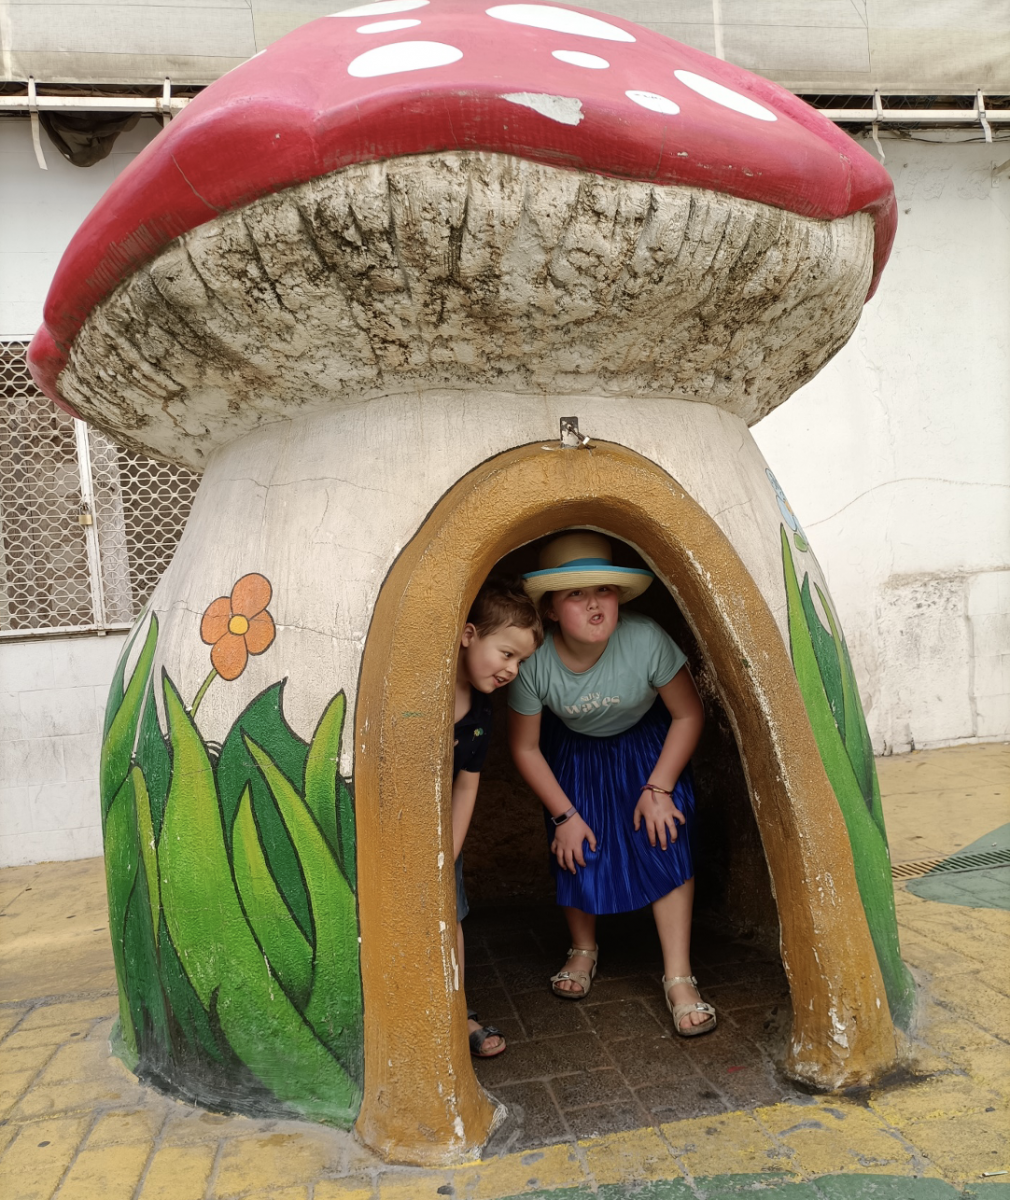 Broer en zus in een "huisje" in de vorm van een paddenstoel. De beschilderde straatstenen kunnen glad zijn.